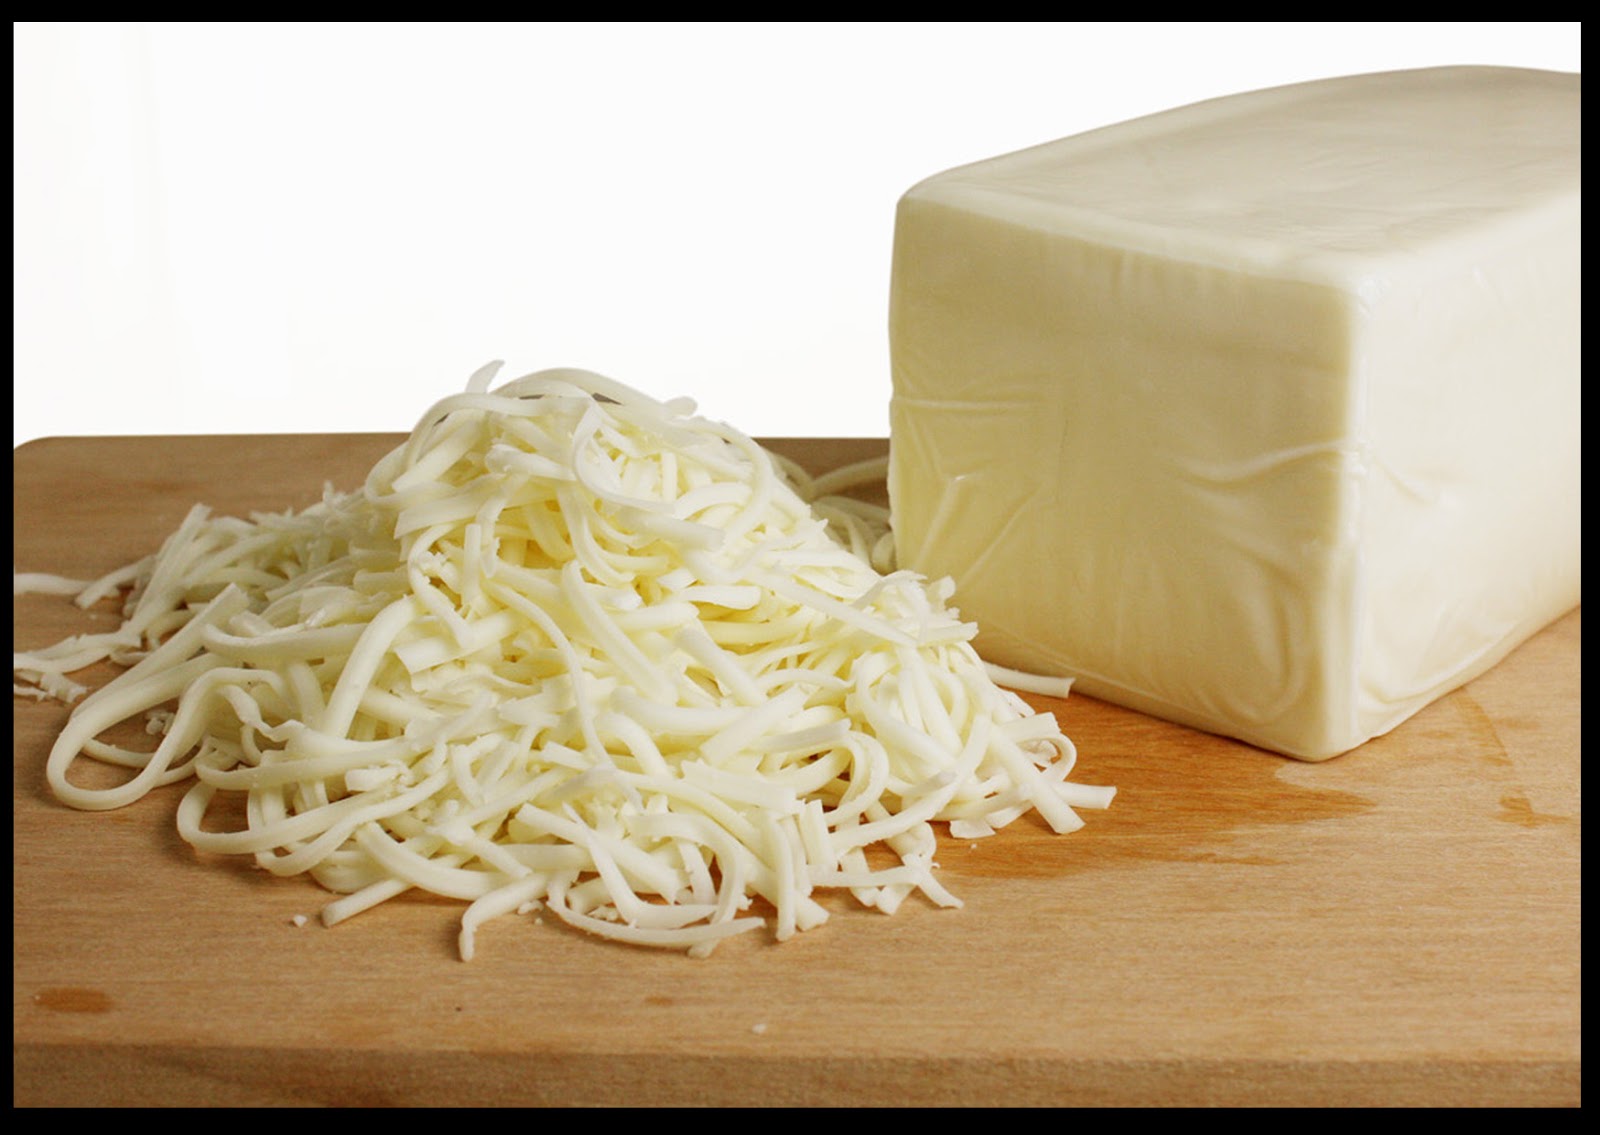 اصنعي بنفسك الجبنة الموتزاريلا المطاطية بثلاث مكونات وداعا لشراء الجاهزة بأقل تكلفة هتعملي اكبر كمية